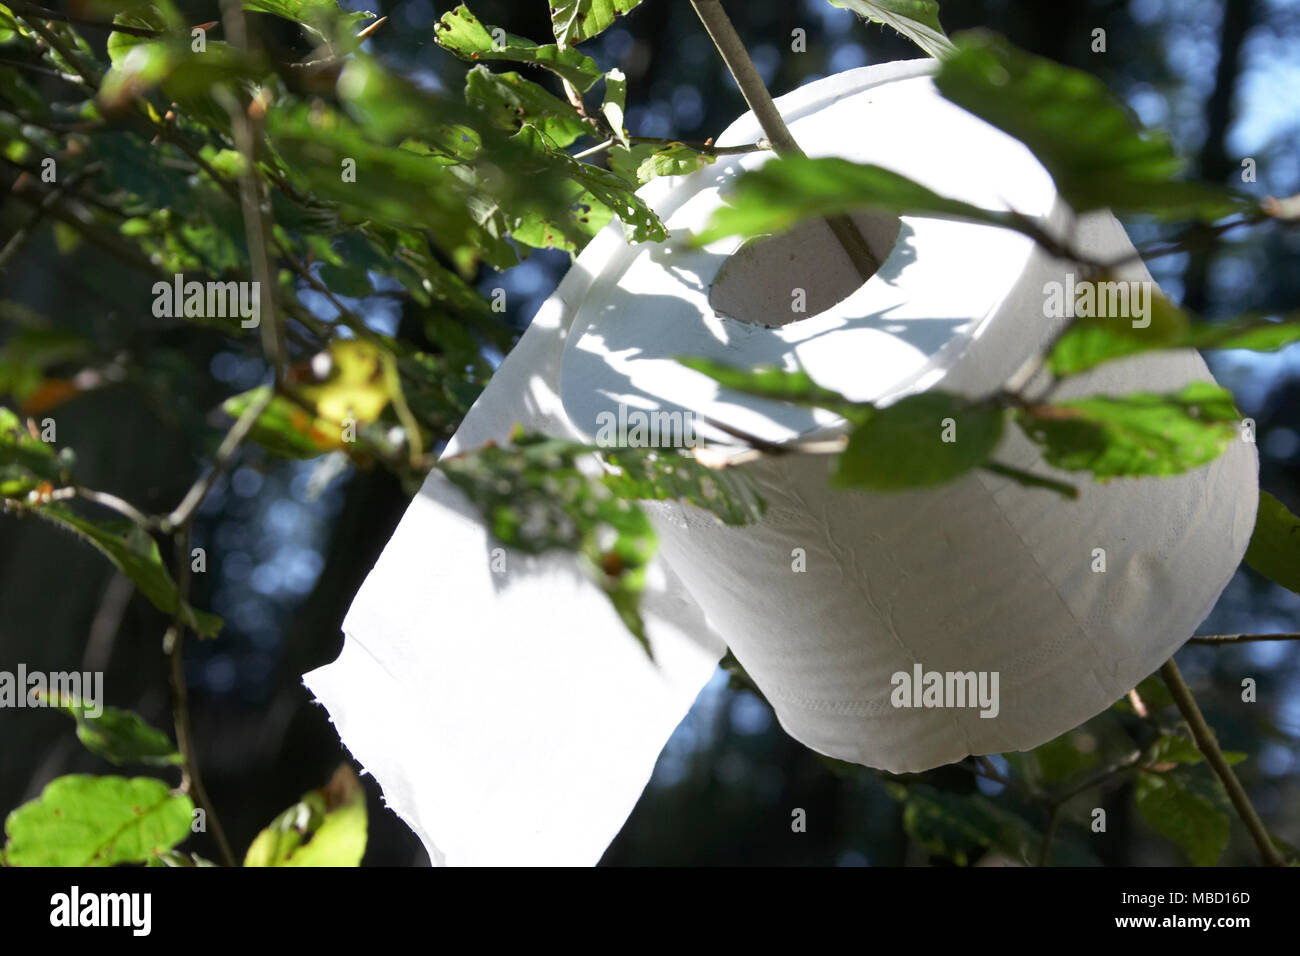 Rouleau de papier toilette accroché dans un arbre Photo Stock - Alamy